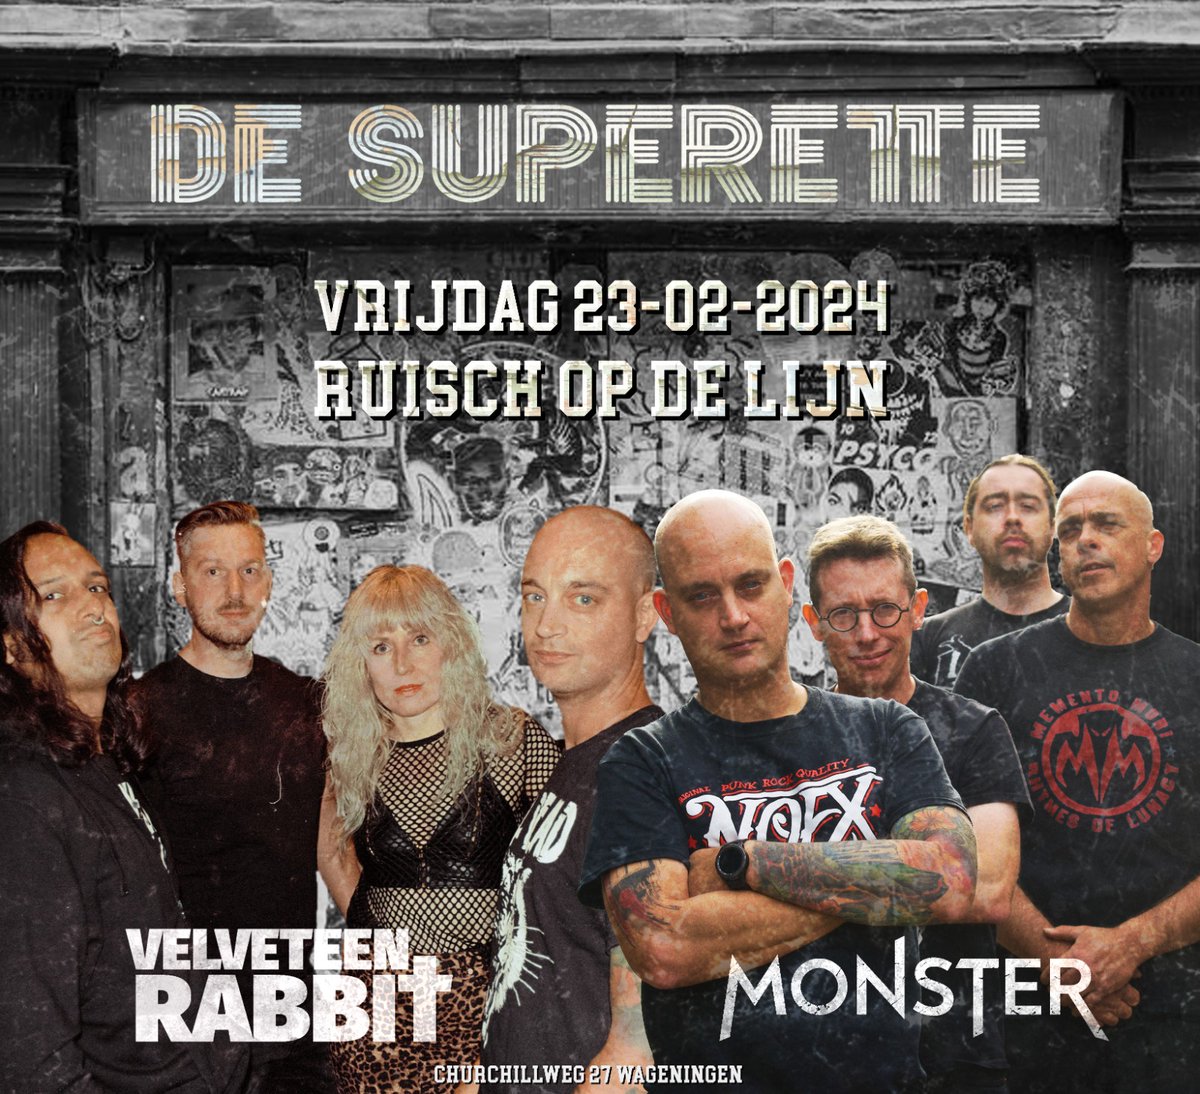 💥Ruisch op de lijn💥 in Wageningen! Samen met @MonsterrrMetal denderen we vrijdag 23 feb zo hard door de Superette🛒dat zelfs Frank zichzelf dubbelziet. Start 20:30u. Entree op donatie. #Waggiewekomeneraan #Ruischopdelijn #livemusic #punk #metal #thrashmetal #music #Wageningen